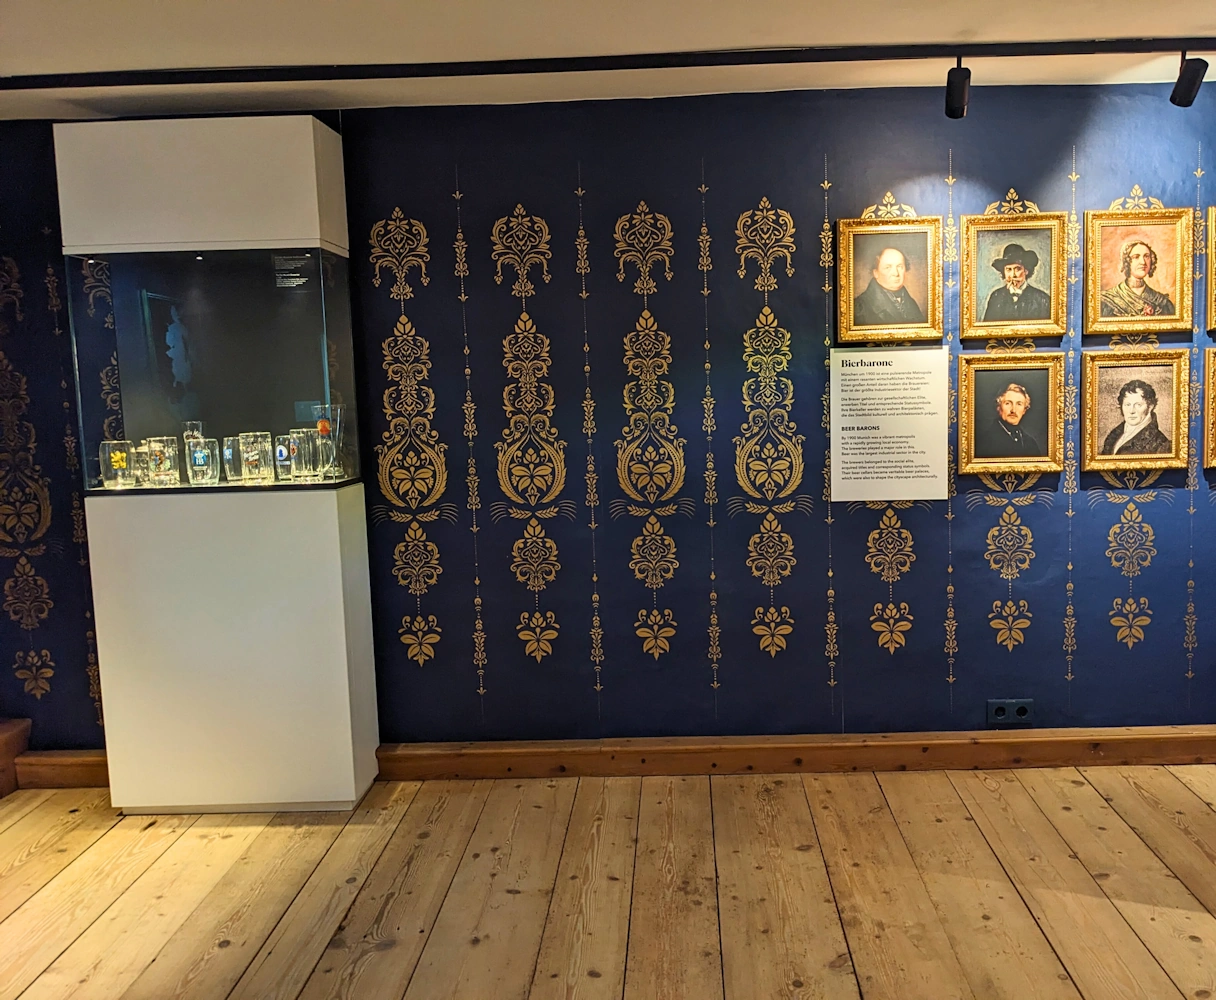 Bier & Oktoberfestmuseum Ausstellung, links verschiedene Bierkrüge und rechts Gemälde von damaligen Bierbaronen, darunter eine Frau